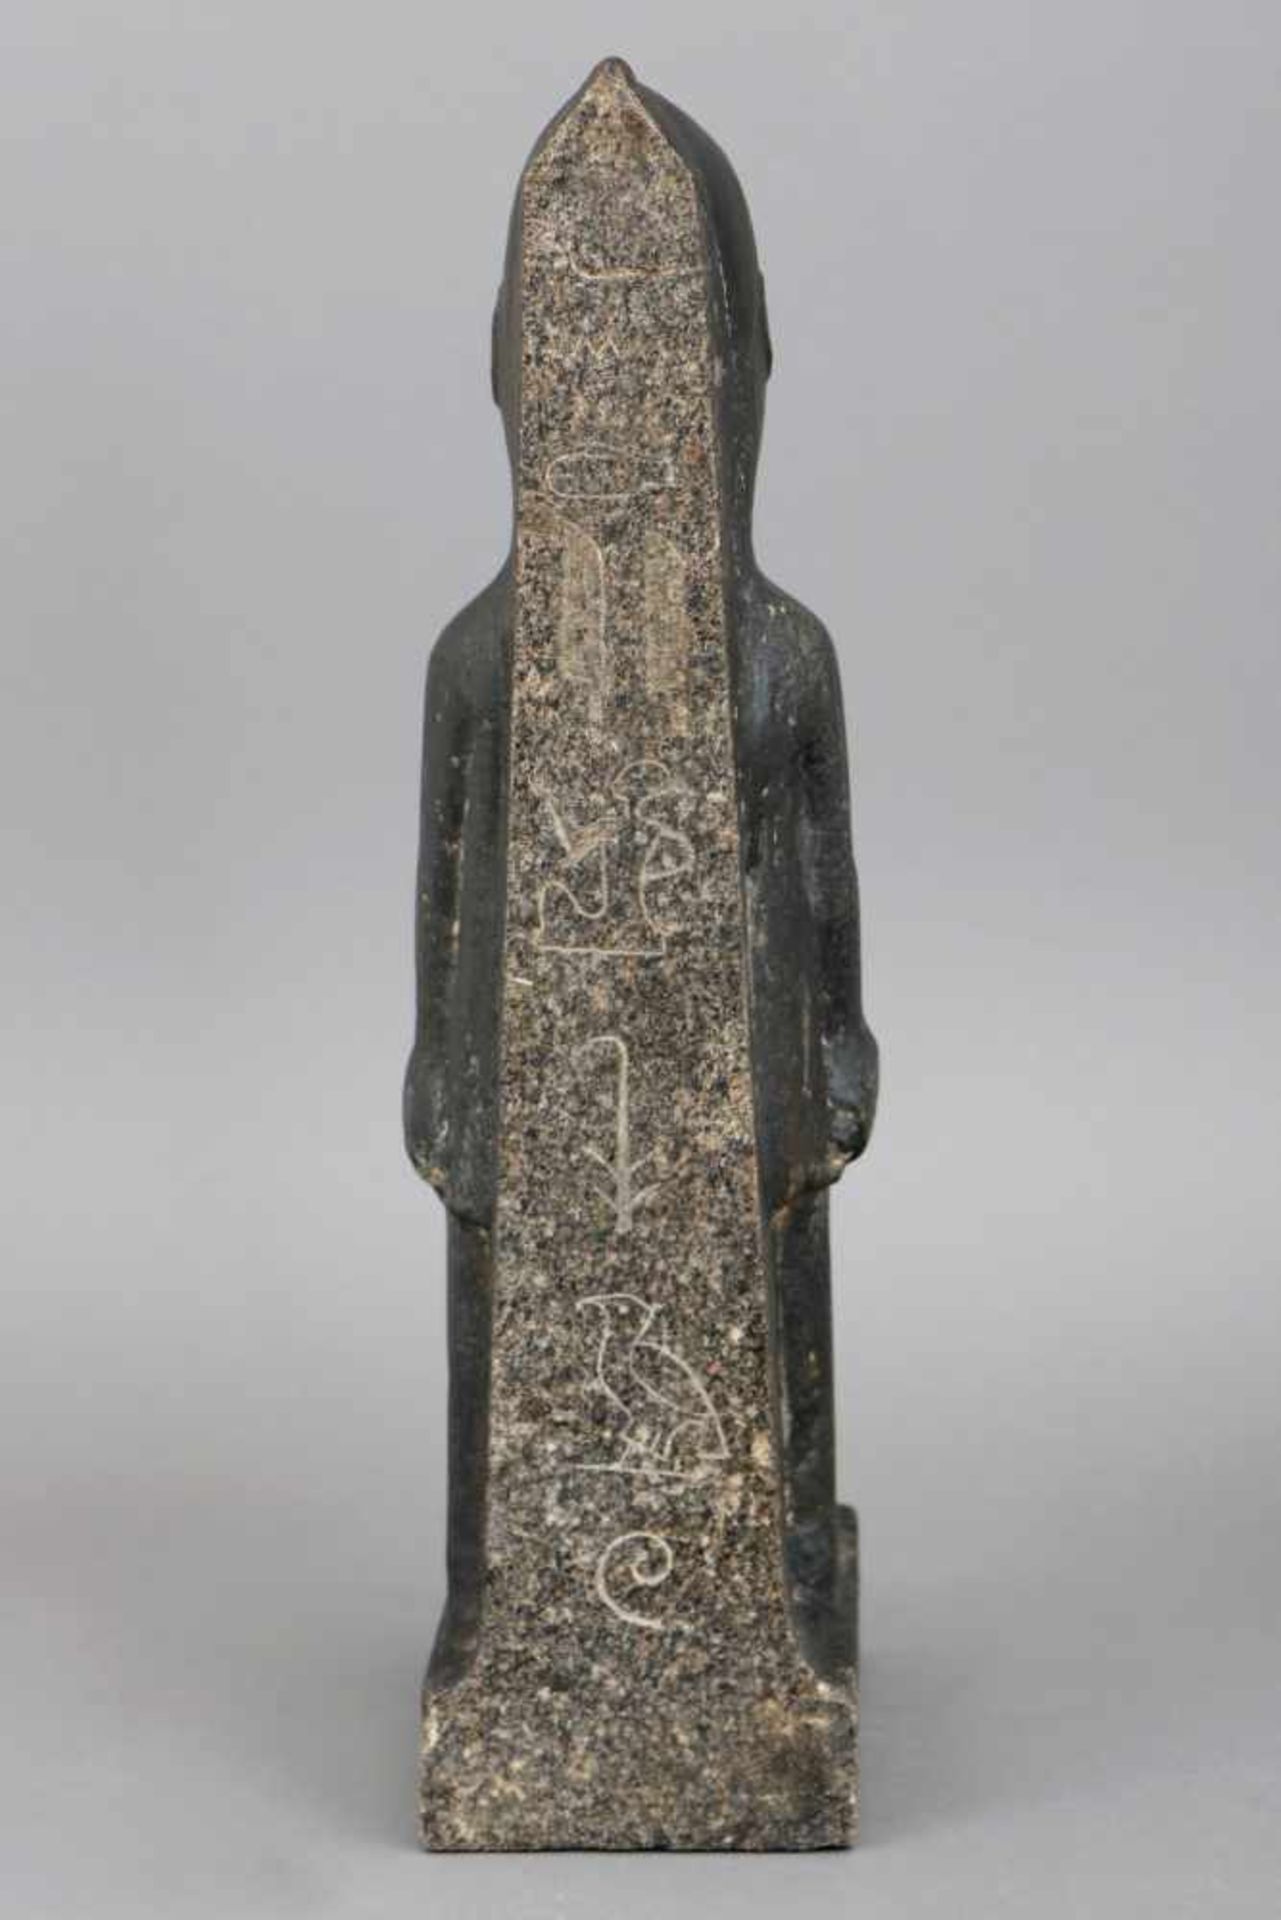 Ägyptische Steinfigur ¨Stehende Diener-/Wächterfigur¨ (Grabbeigabe)Granit, teilweise poliert, - Bild 3 aus 3